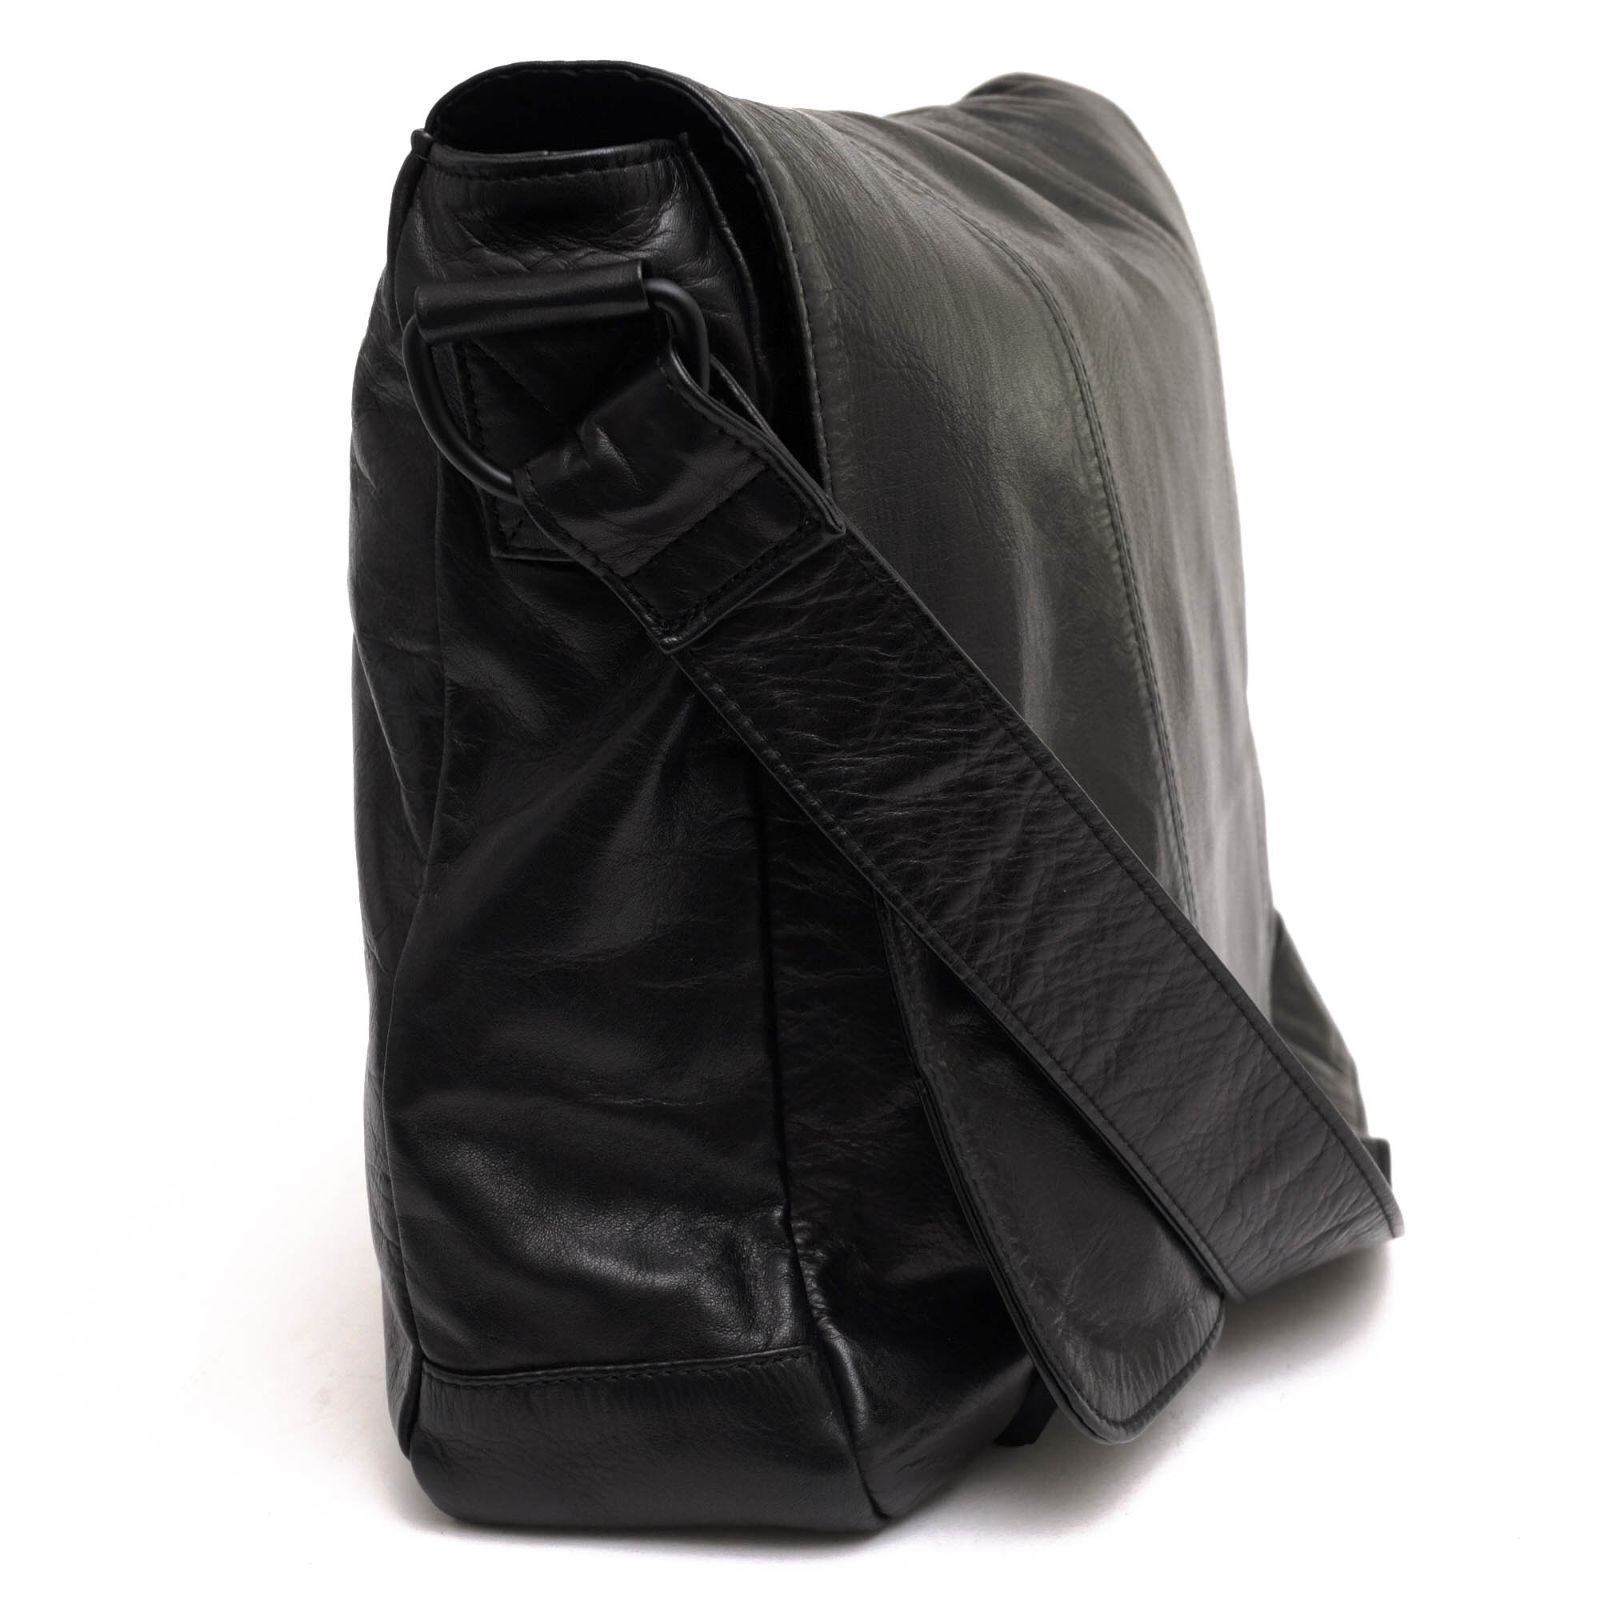 ポーター 吉田カバン／PORTER バッグ ショルダーバッグ 鞄 メンズ 男性 男性用レザー 革 本革 ブラック 黒 166-02653 NARROW  SHOULDER BAG ナロー A4サイズ収納可 メッセンジャーバッグ